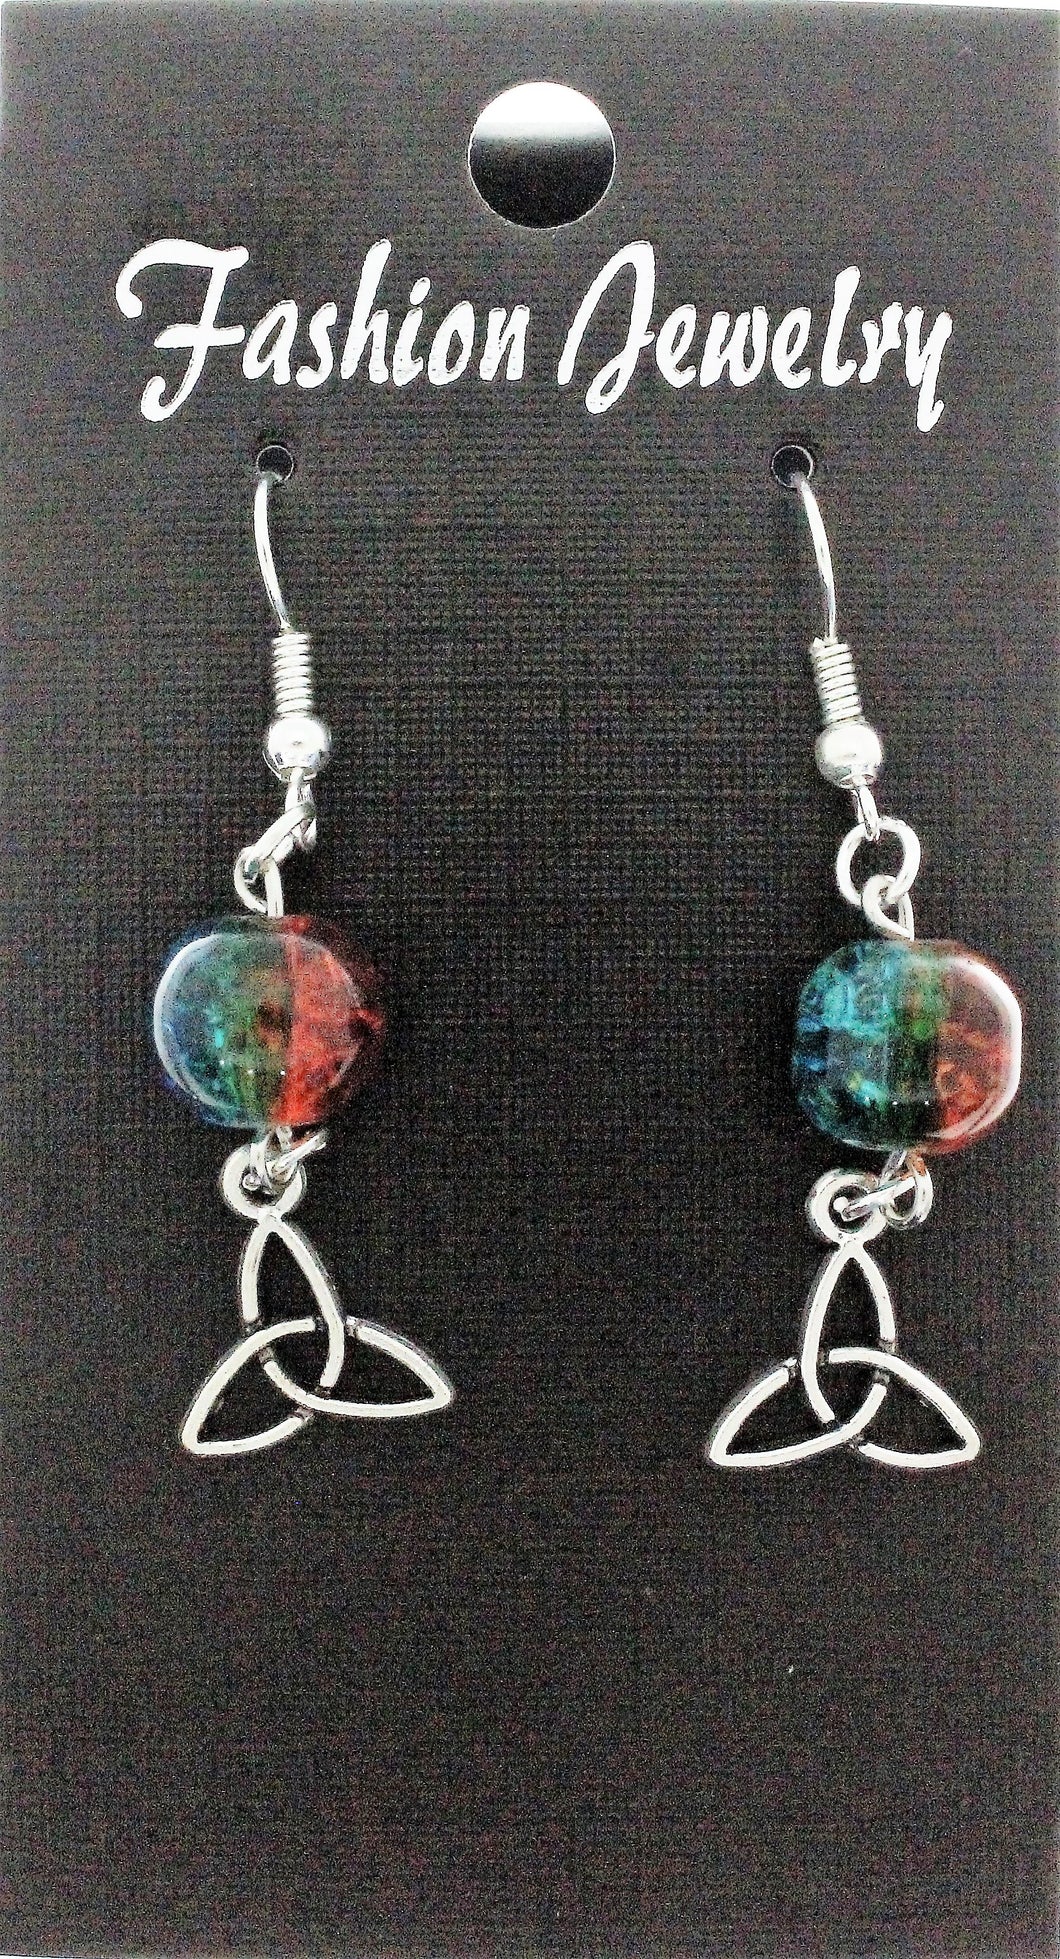 AVBeads Jewelry Charm Earrings Dangle Silver Hook Beaded Blue Orange Triquetra Mini